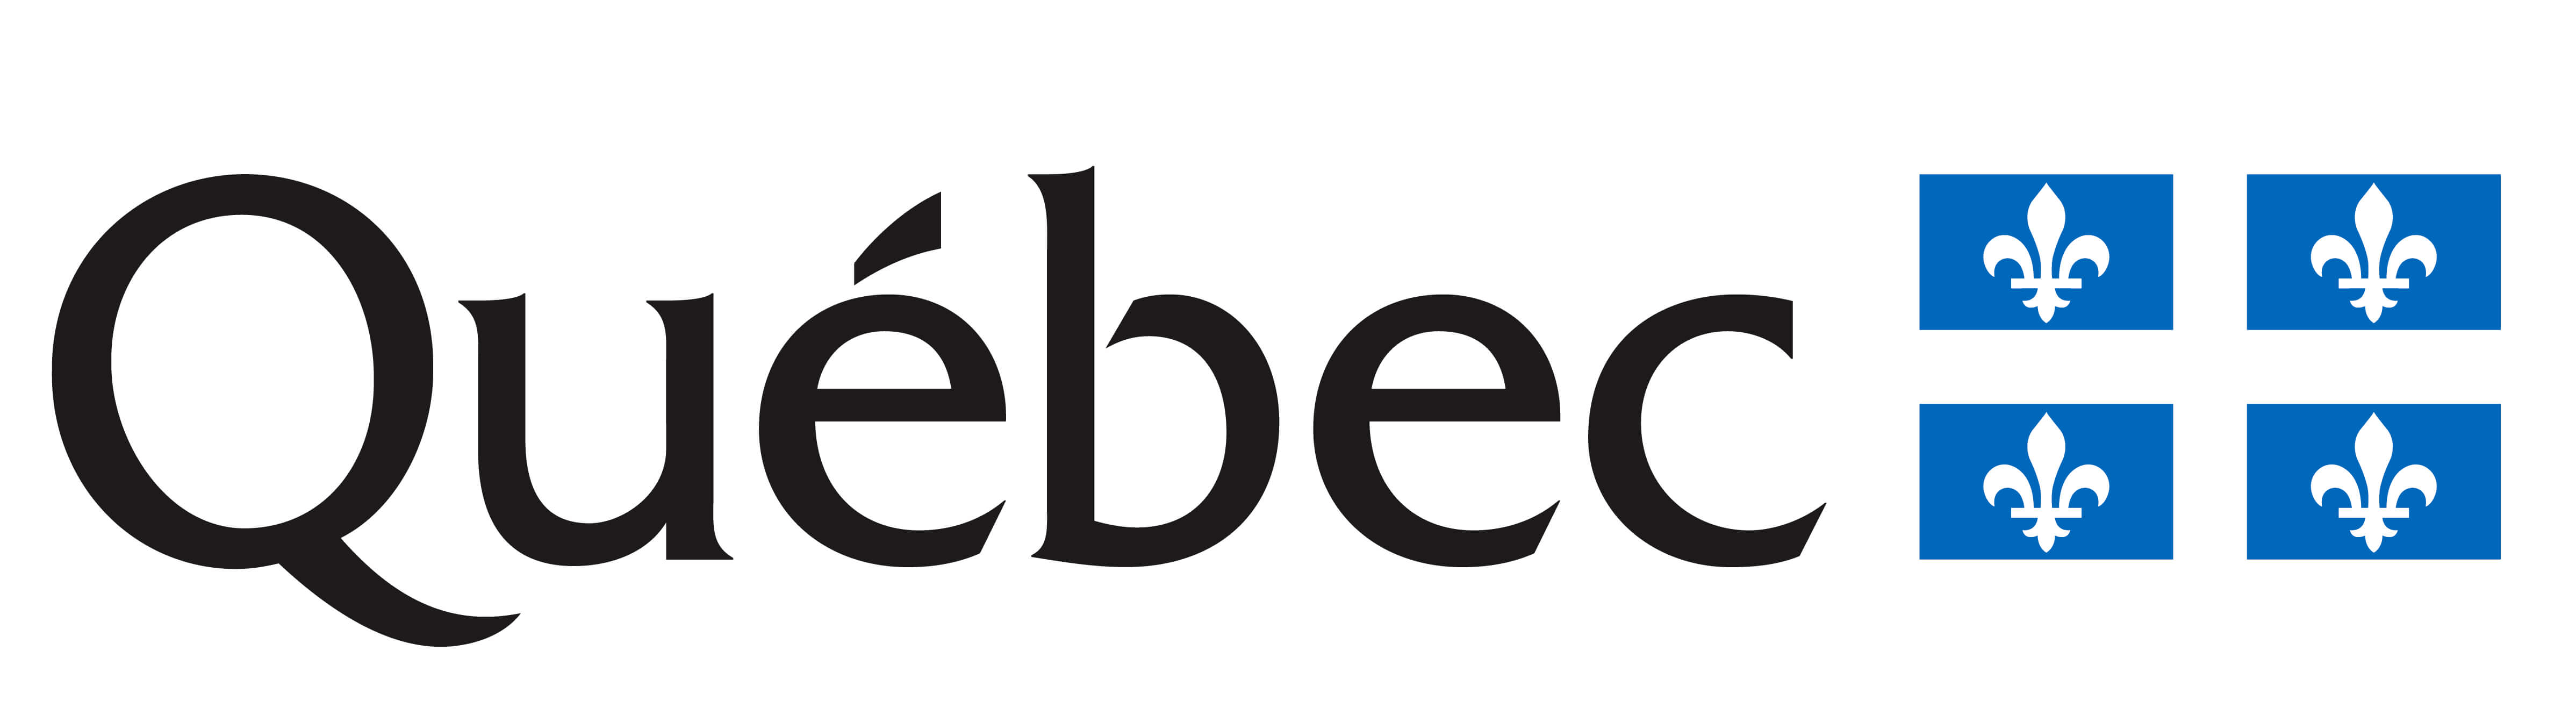 logo Gouvernement du Québec